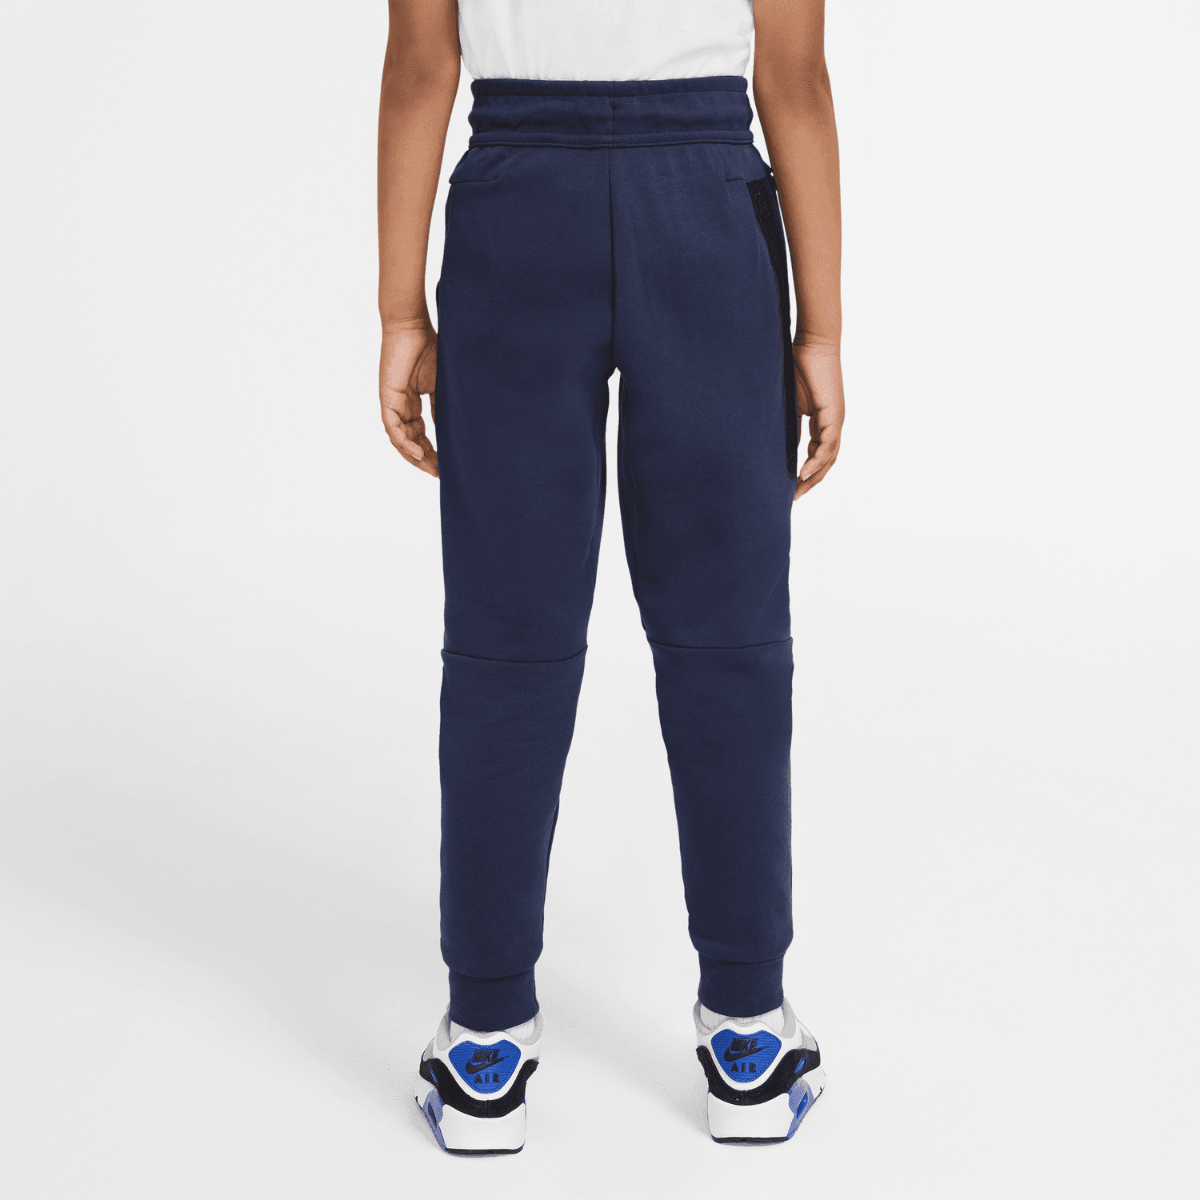 Pantalon jogging Nike Tech Fleece Junior - Bleu/Noir